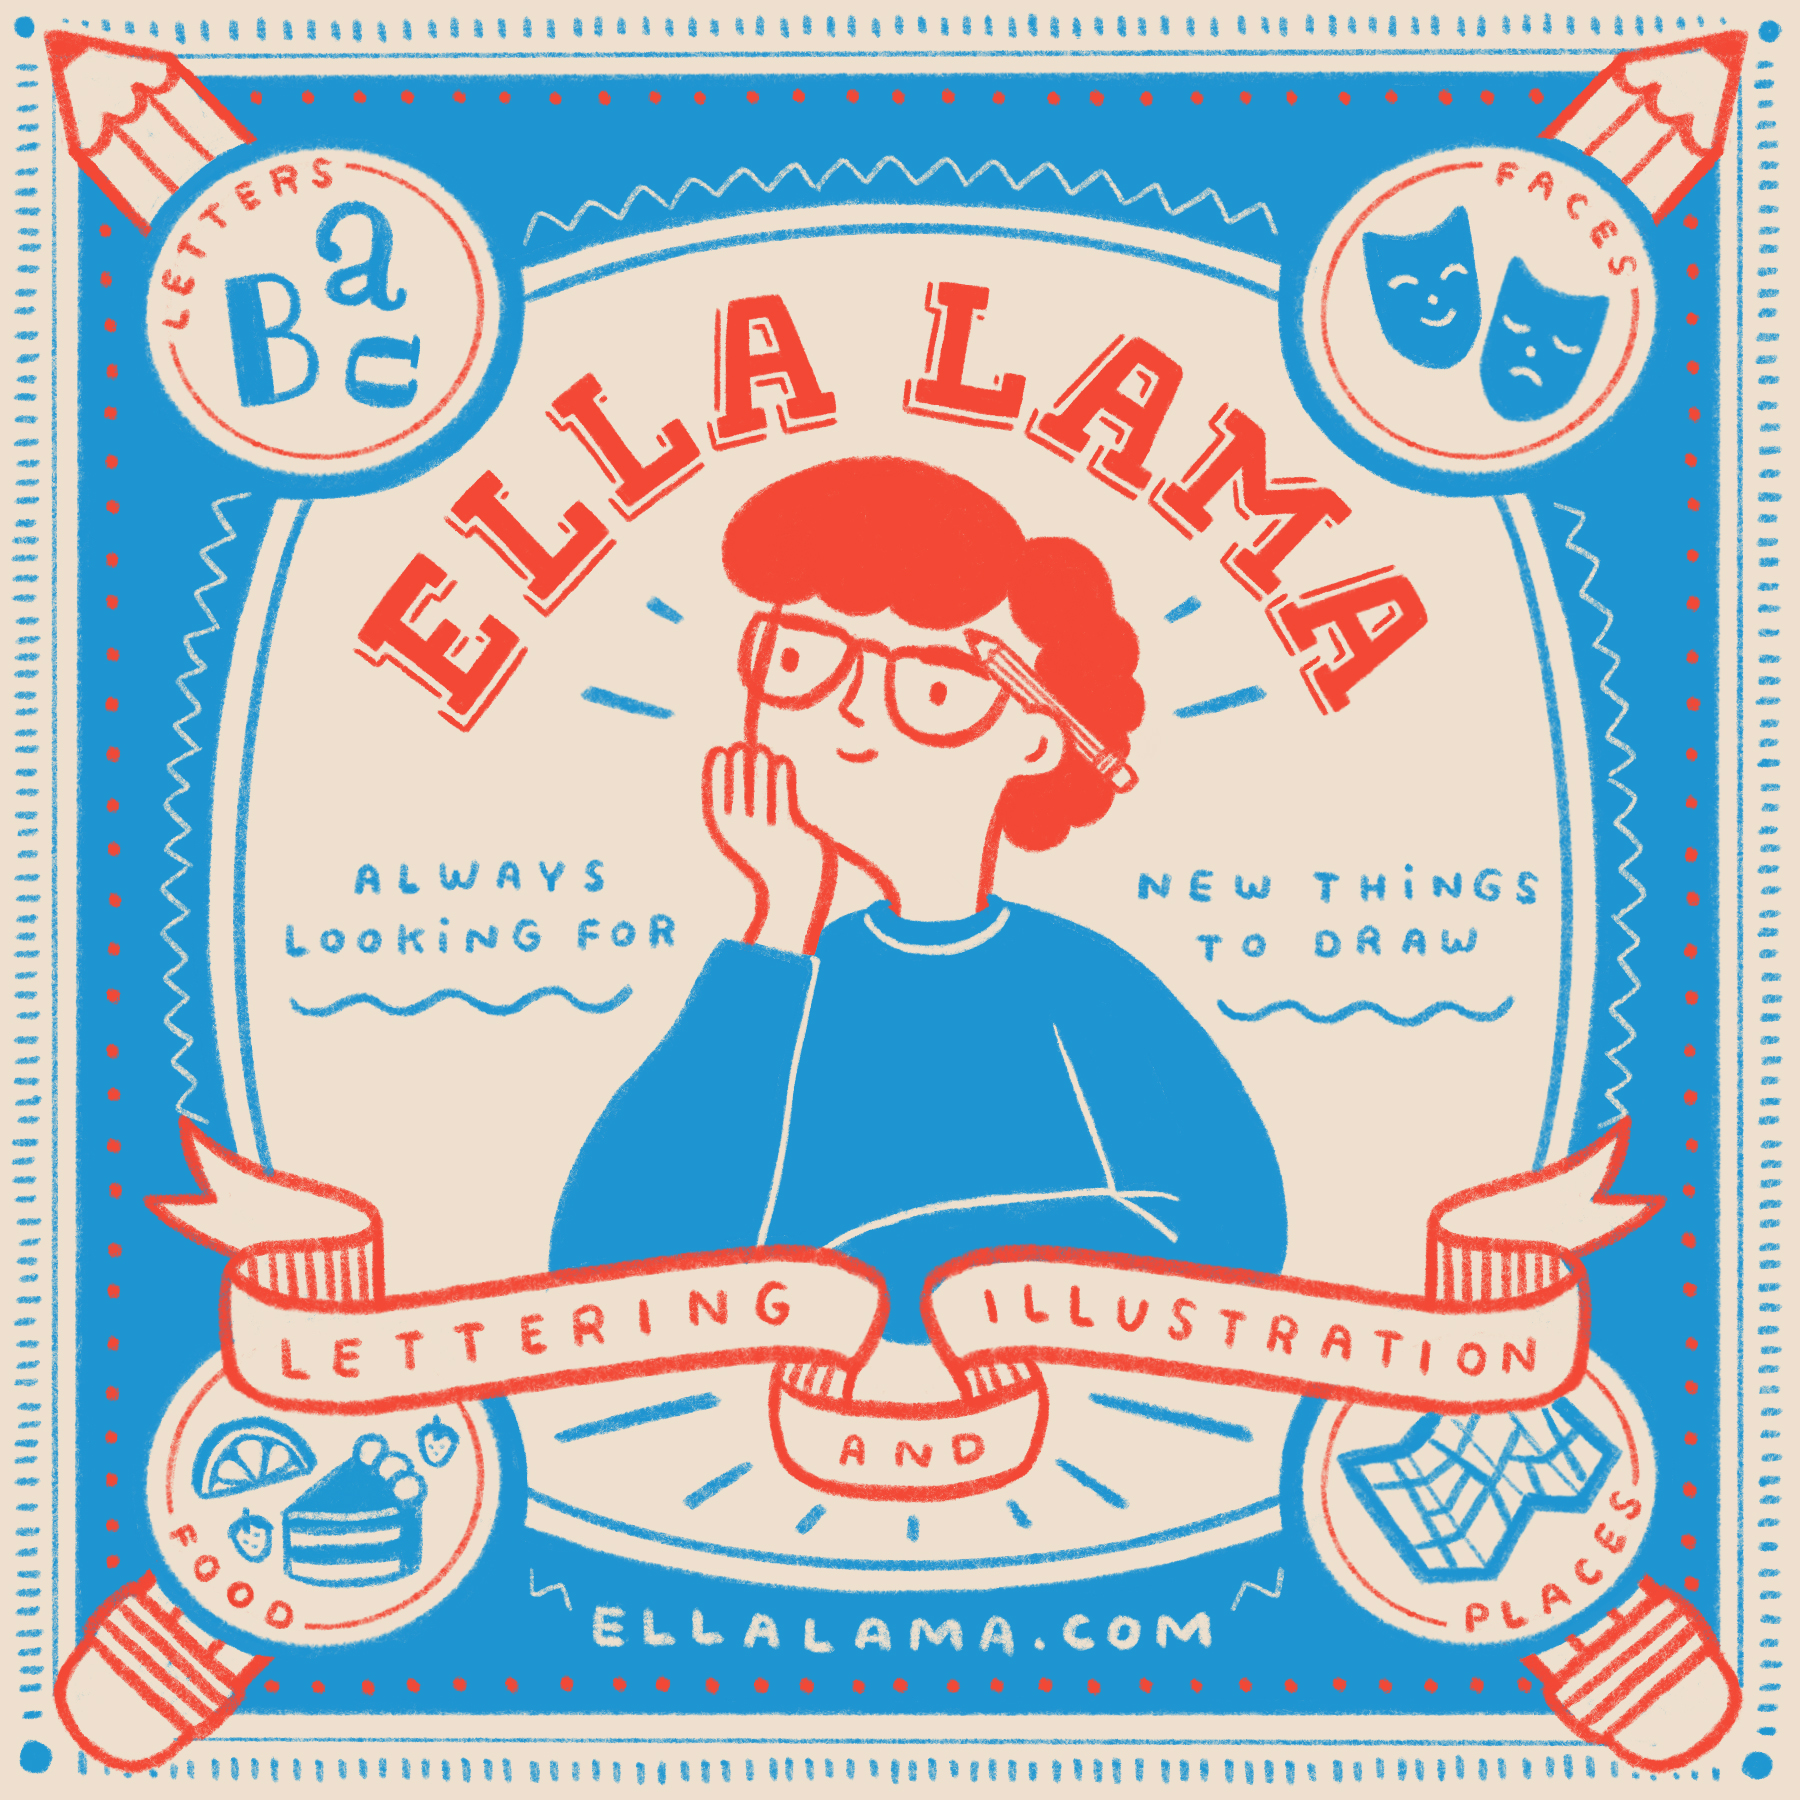 Ella Lama